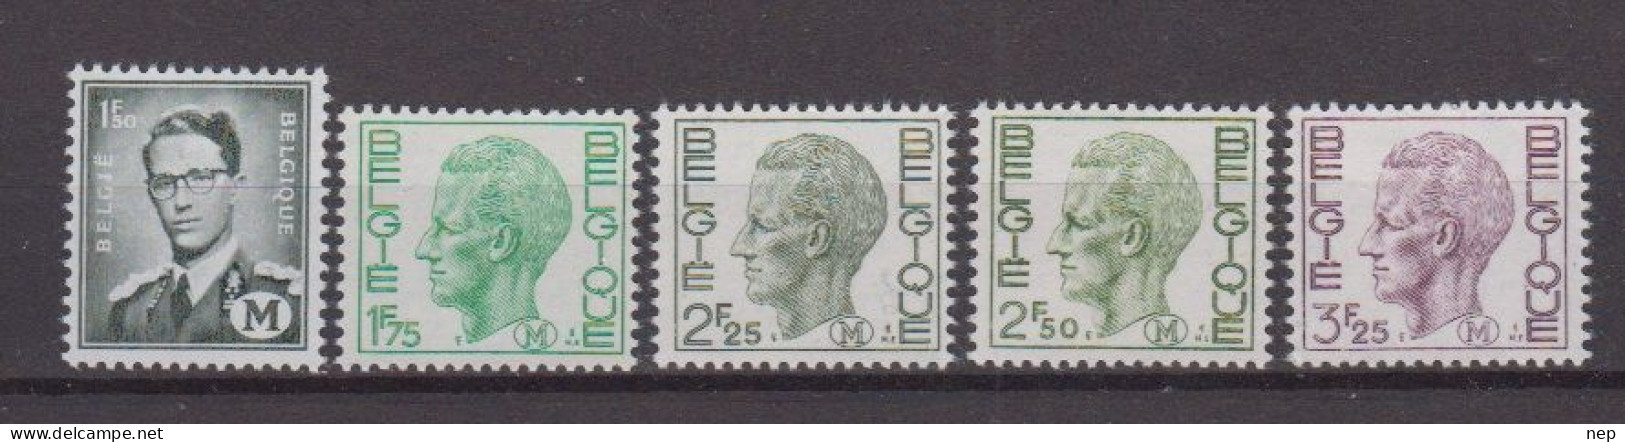 BELGIË - OBP - 1967/75 - M1/5 - MNH** - Briefmarken [M]